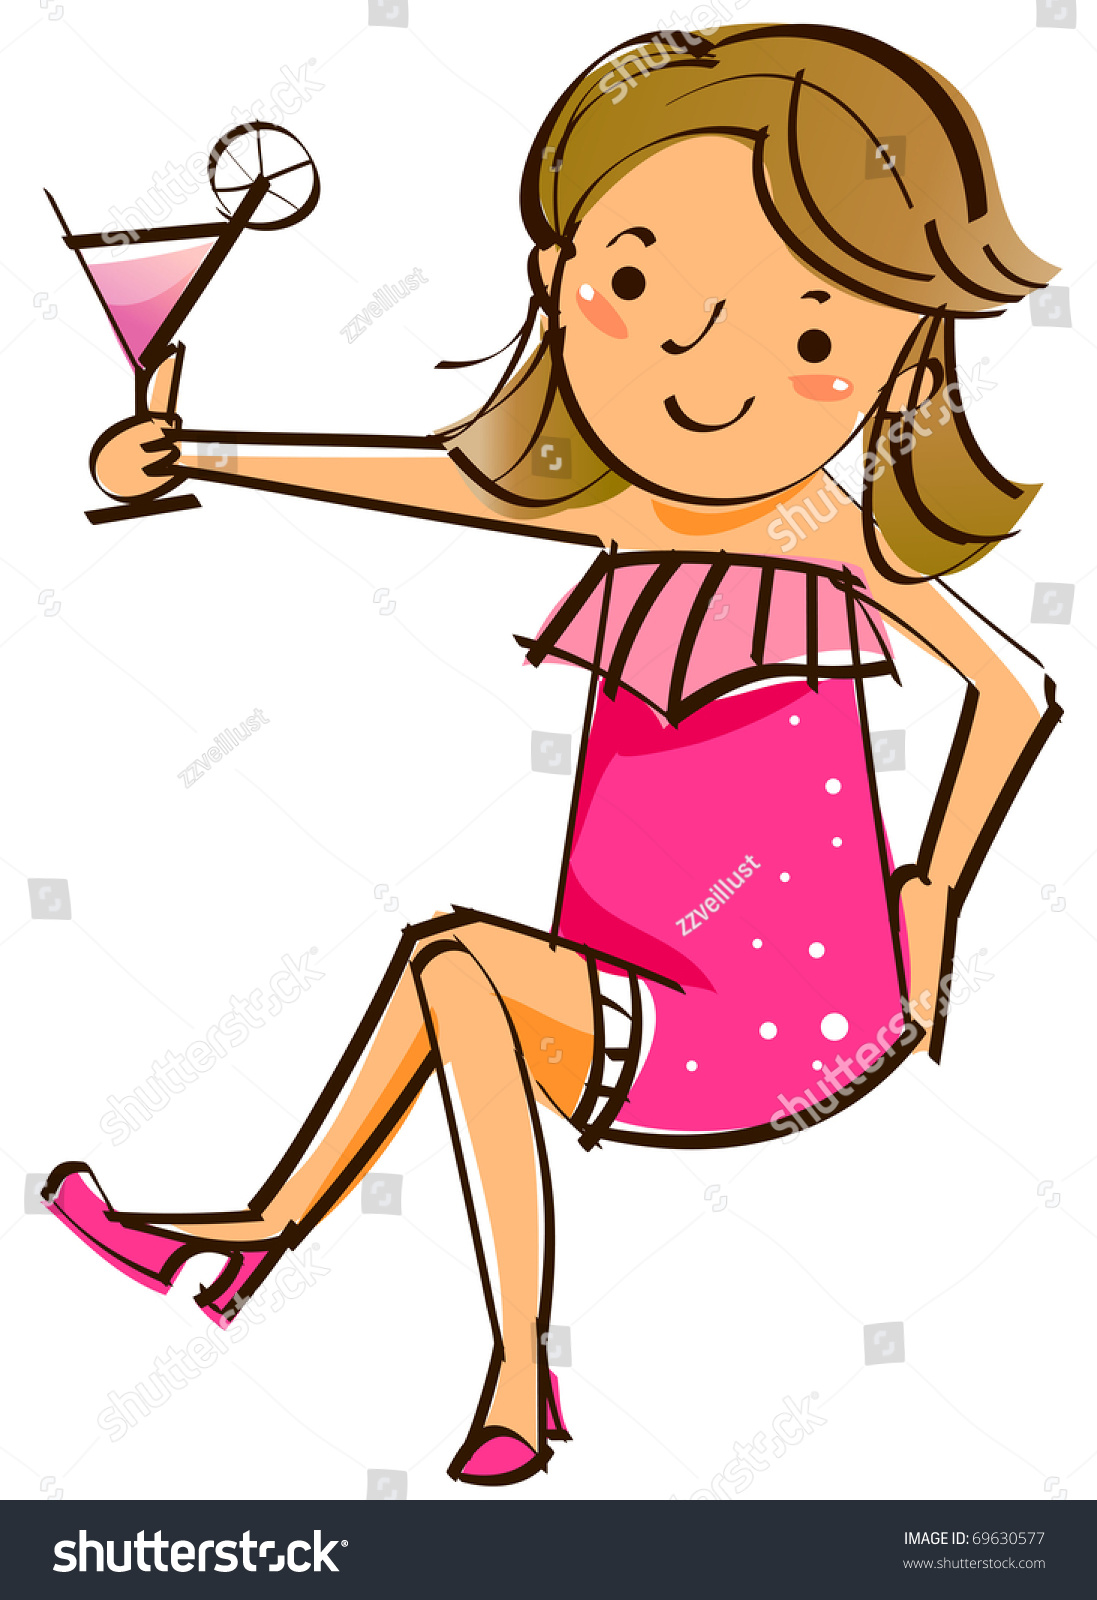 Girl Holding Wine Glass Stock Vector 69630577 - Shutterstock